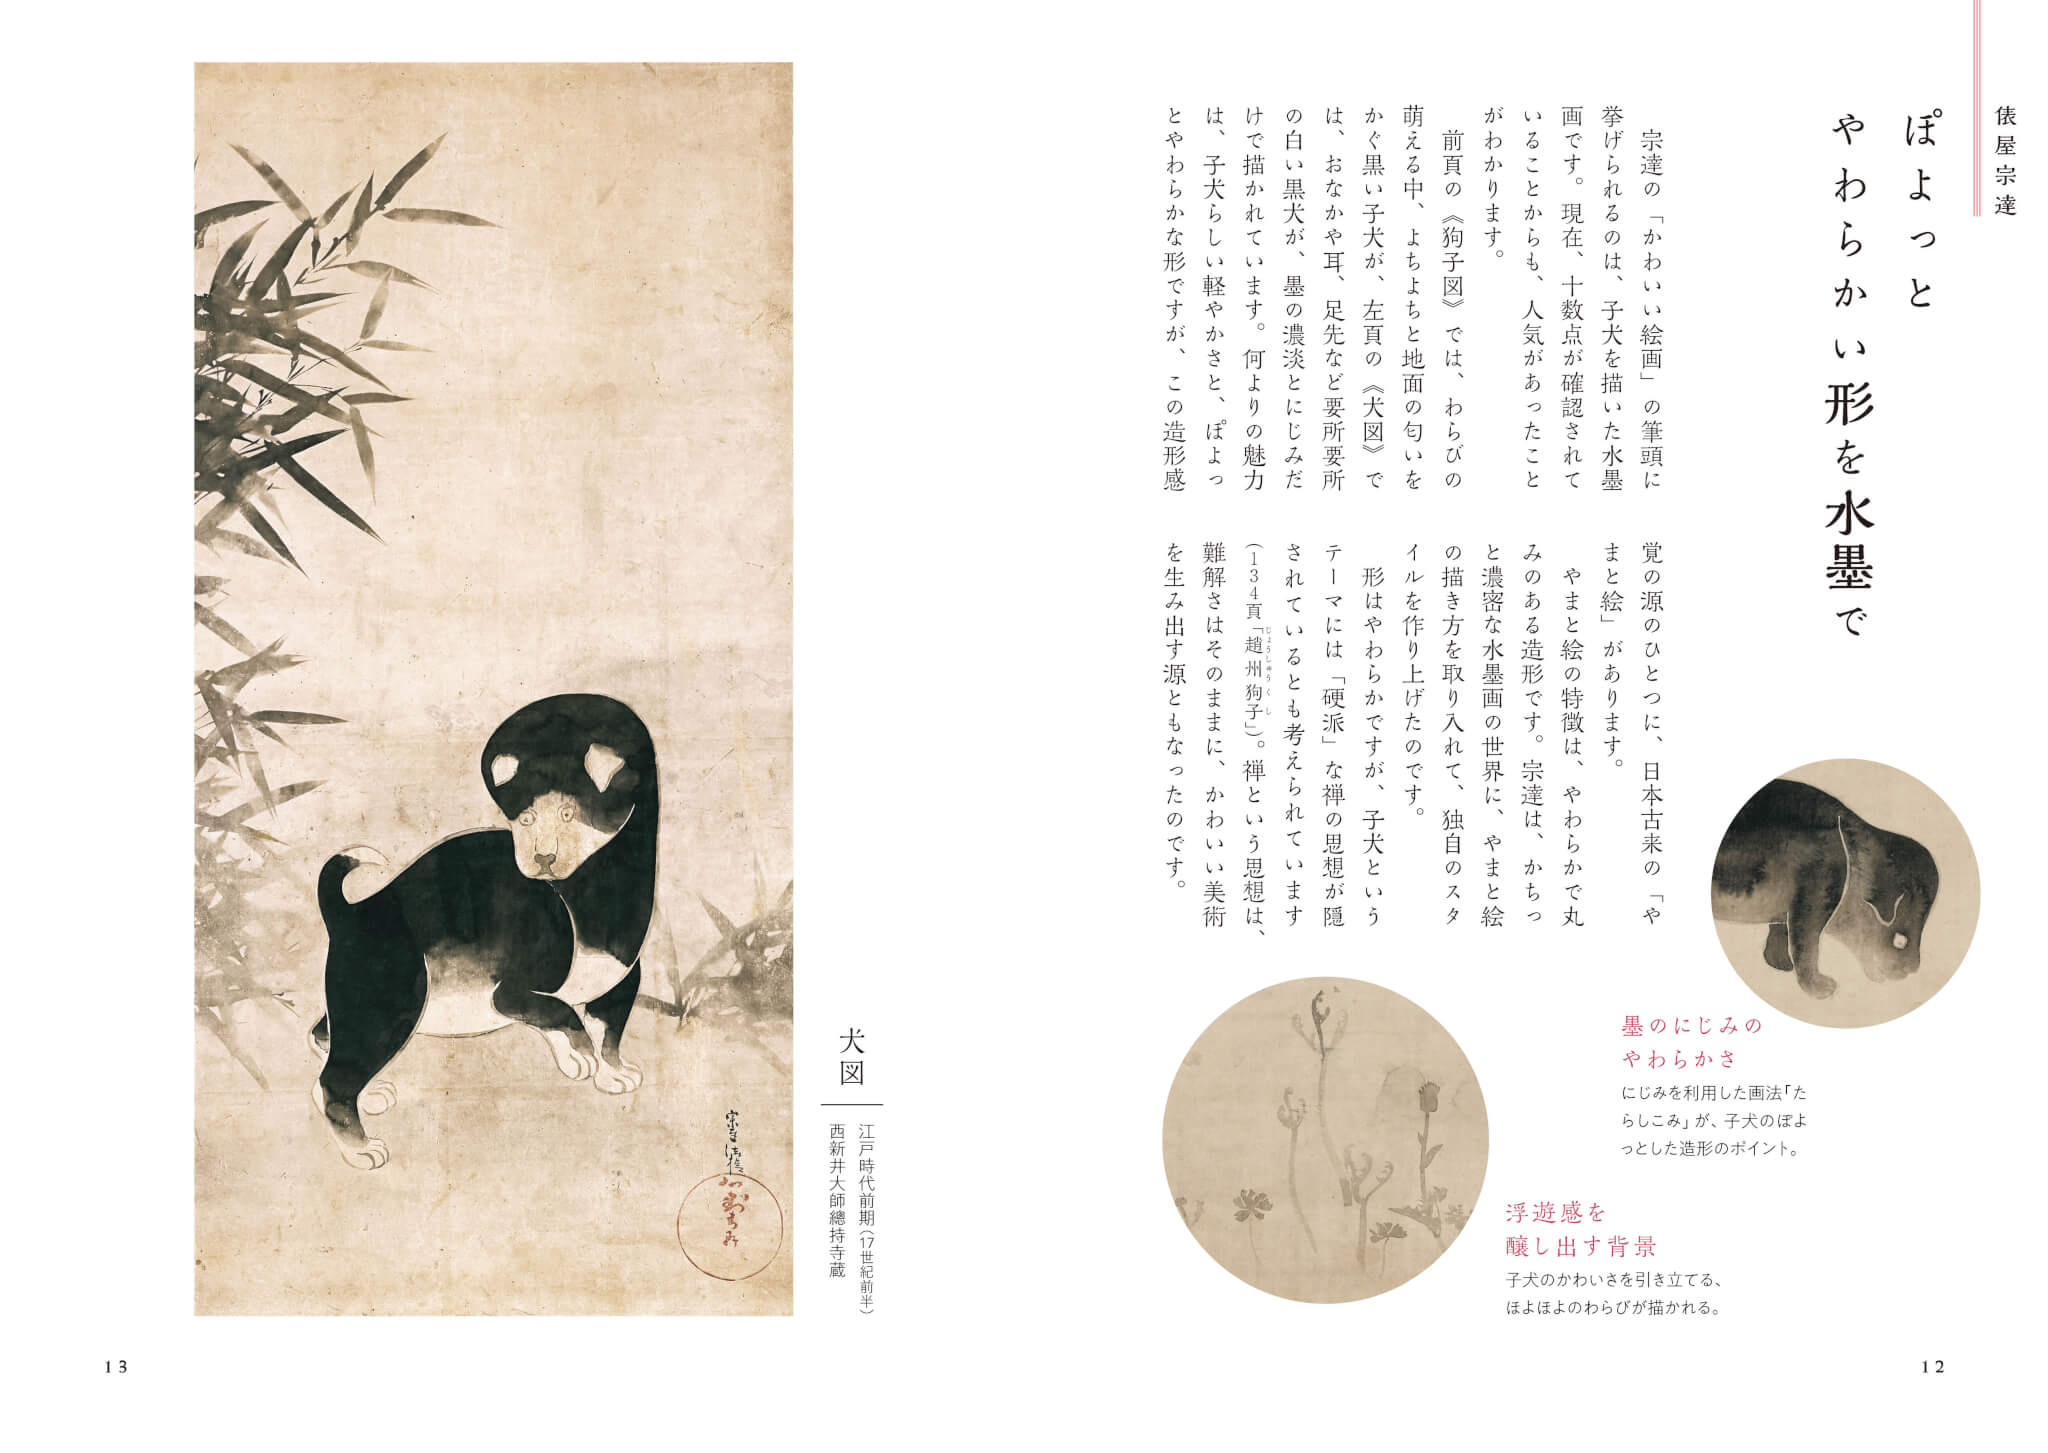 かわいい江戸の絵画史の1ページ